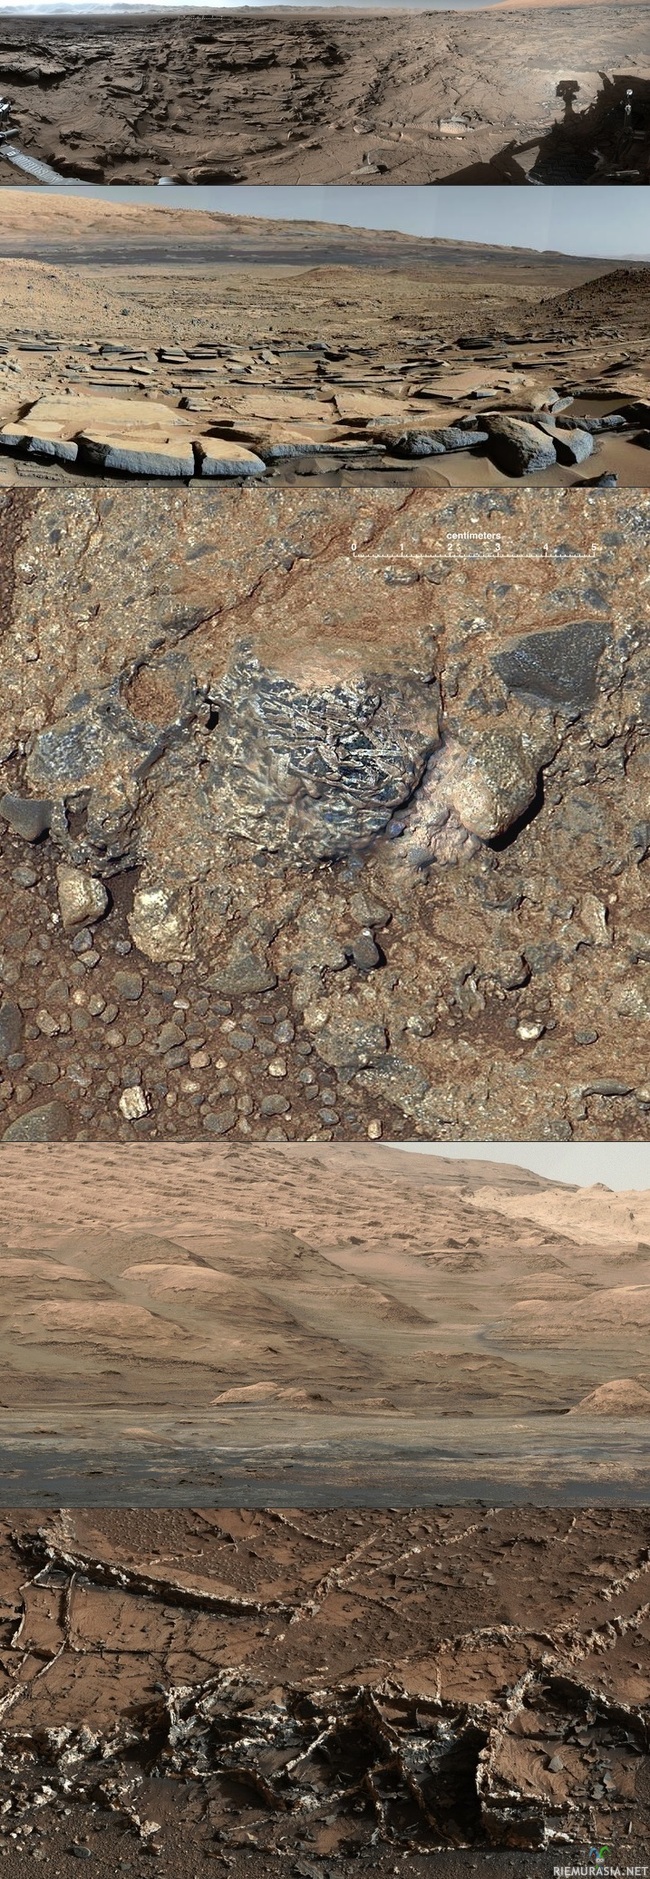 Mars - Roverilla otettuja kuvia marssista